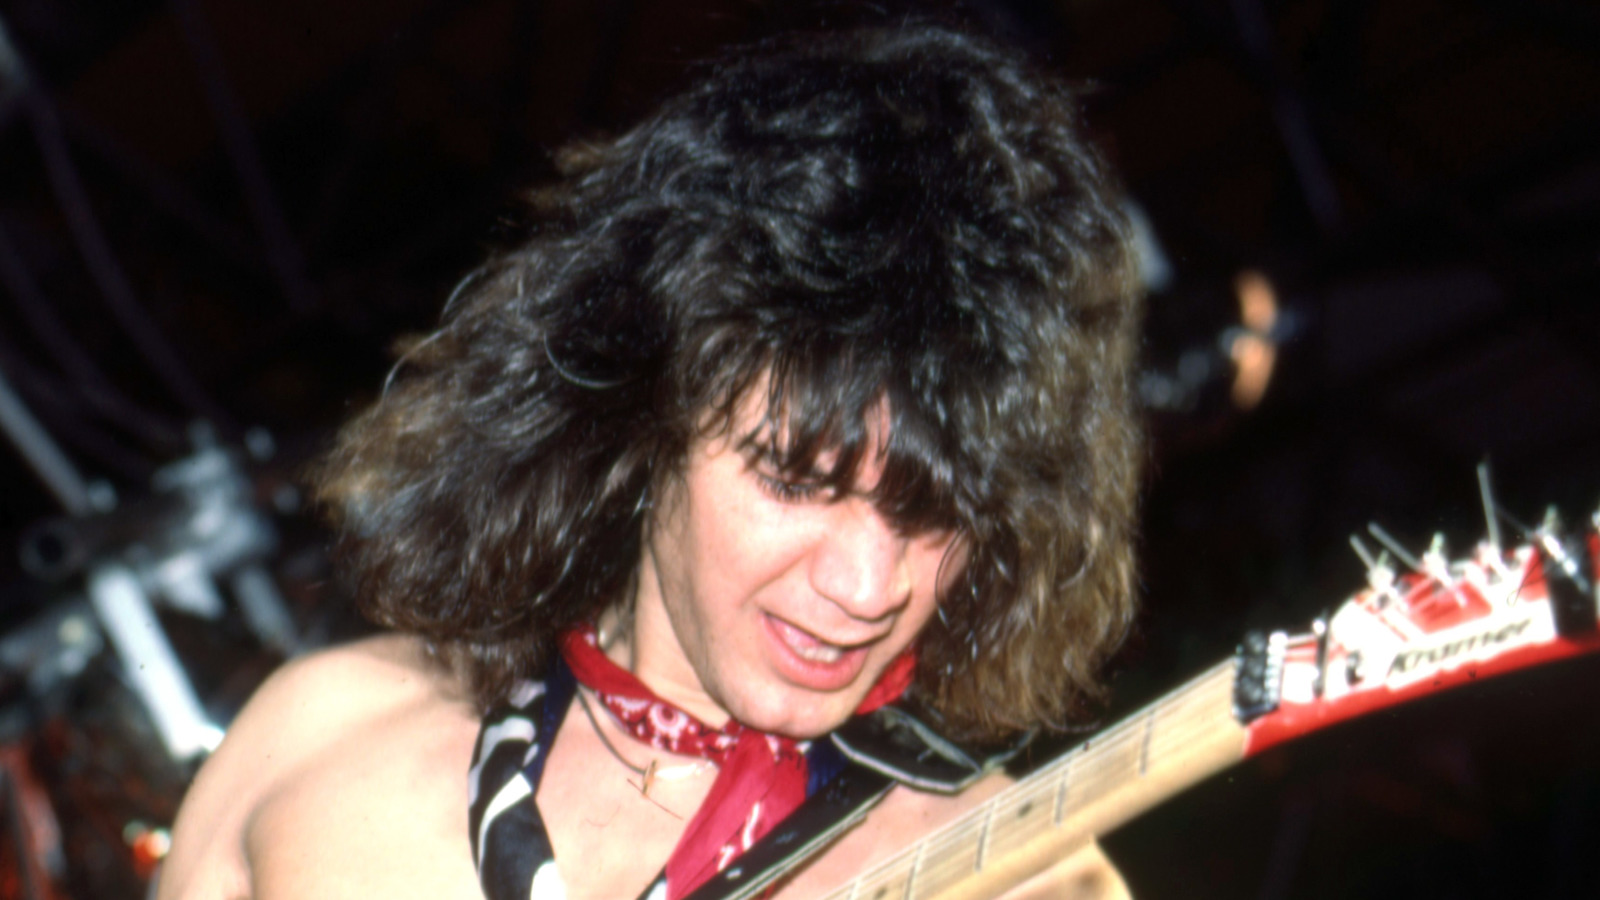 Valerie Bertinelli honors late ex Eddie Van Halen on birthday